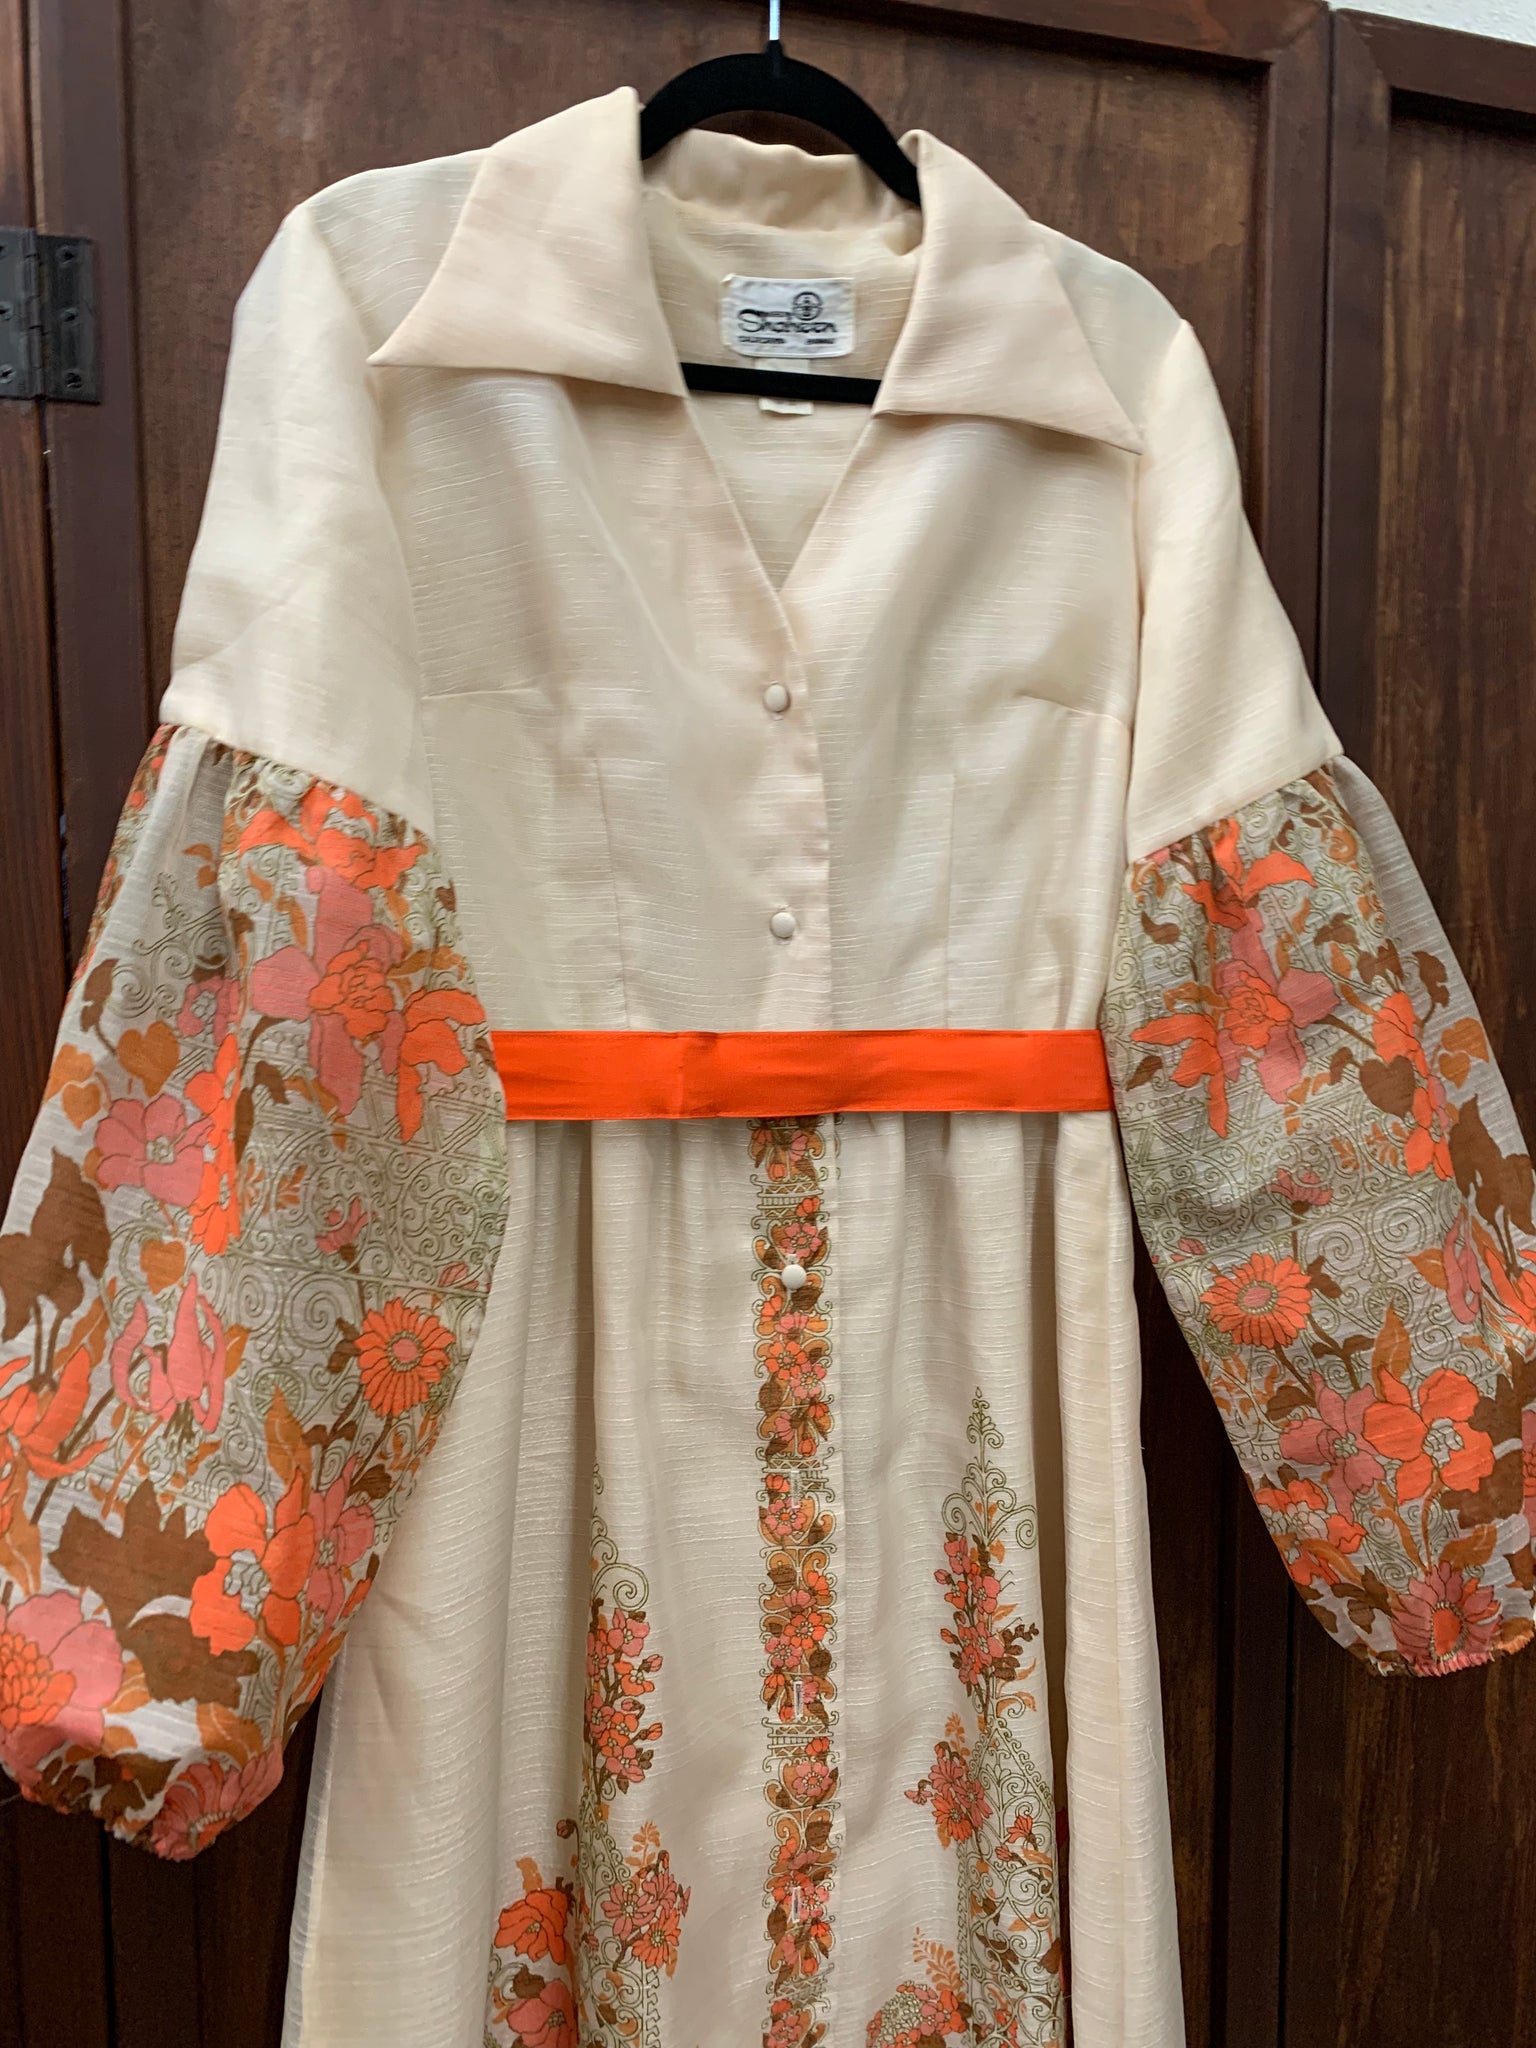 1960s DRESS- Shaheen cream w/ orange floral details